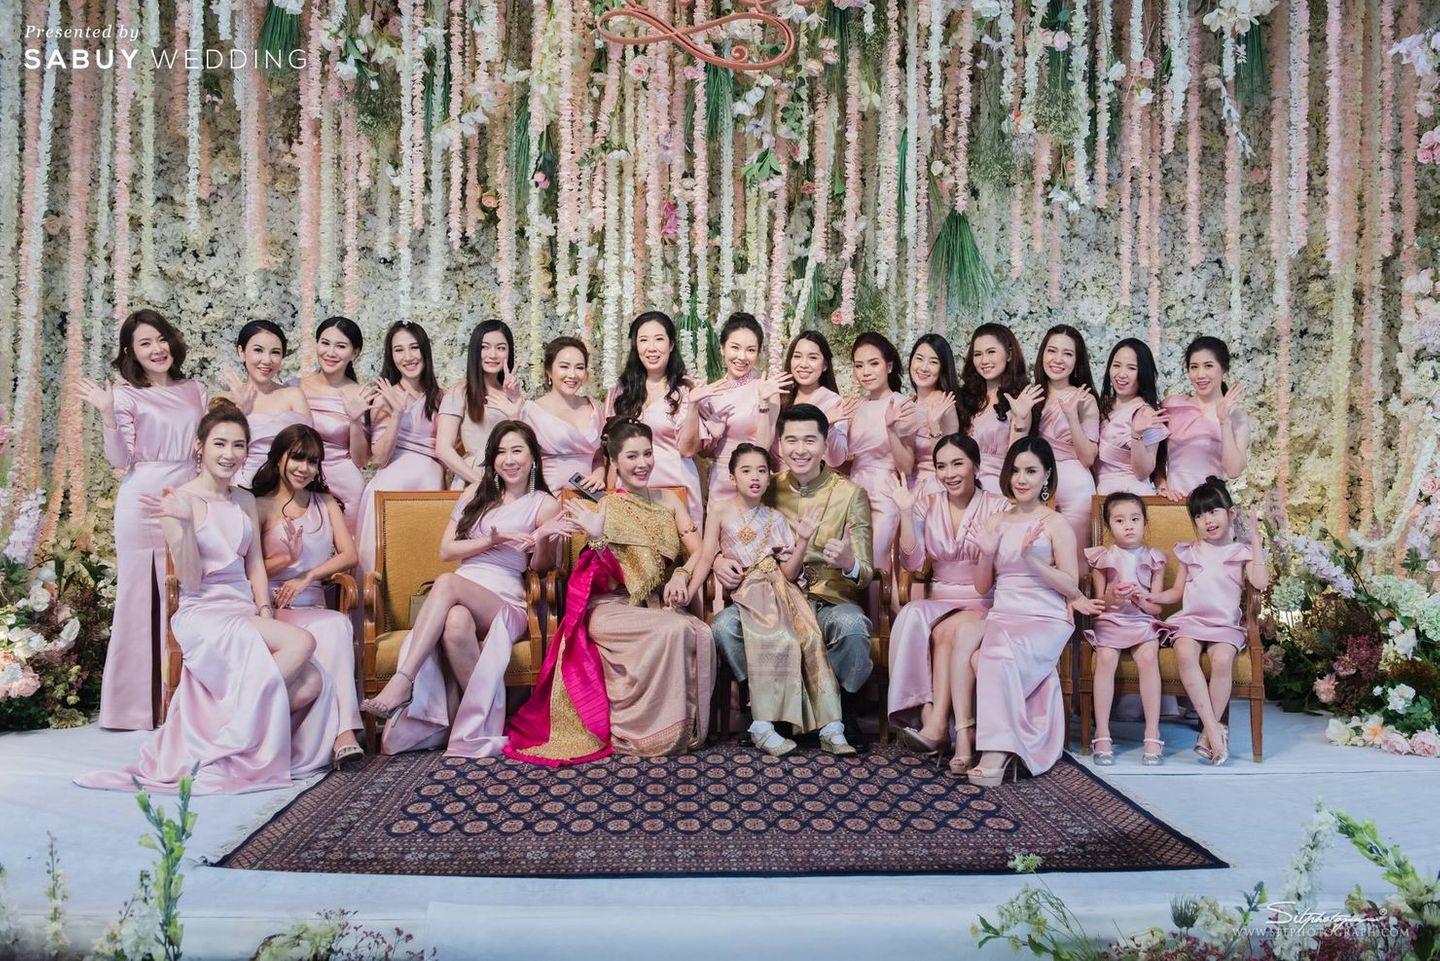 งานแต่งงาน,พิธีแต่งงานแบบไทย,ชุดไทยเจ้าสาว,เจ้าสาวเจ้าบ่าว,สถานที่แต่งงาน,โรงแรม,ตกแต่งงานแต่ง,จัดดอกไม้งานแต่ง,ชุดเพื่อนเจ้าสาว,เพื่อนเจ้าสาว รีวิวงานแต่งสุดอบอุ่นแห่งปี ‘We are Family’ งานนี้ห้อมล้อมด้วยรัก @Mandarin Oriental